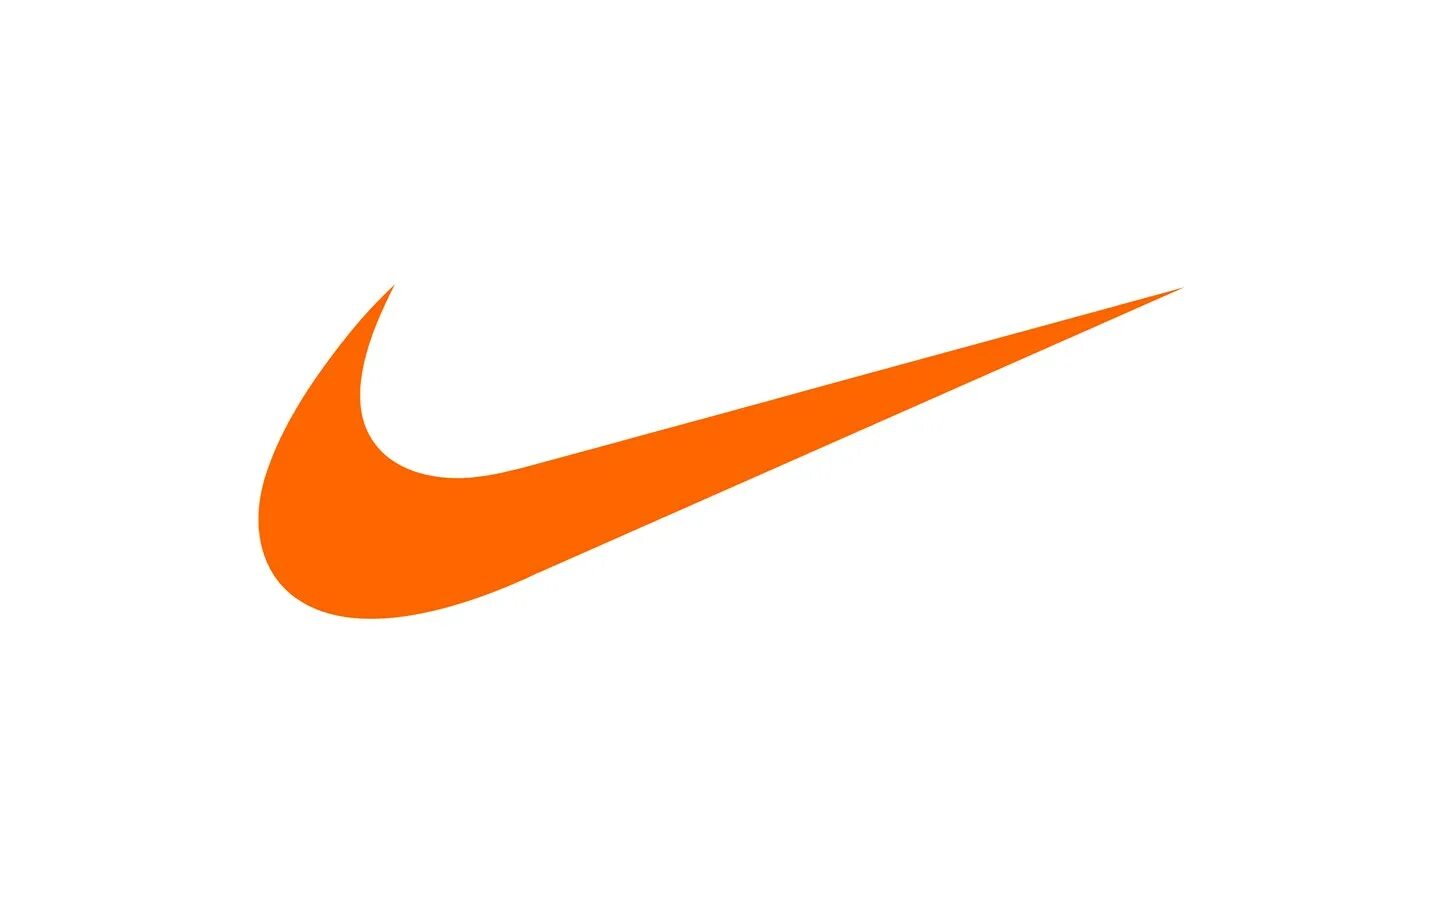 Nike logo 512x. Белый свуш найк. Nike 512x512. Nike Swoosh логотип. Черный значок найк